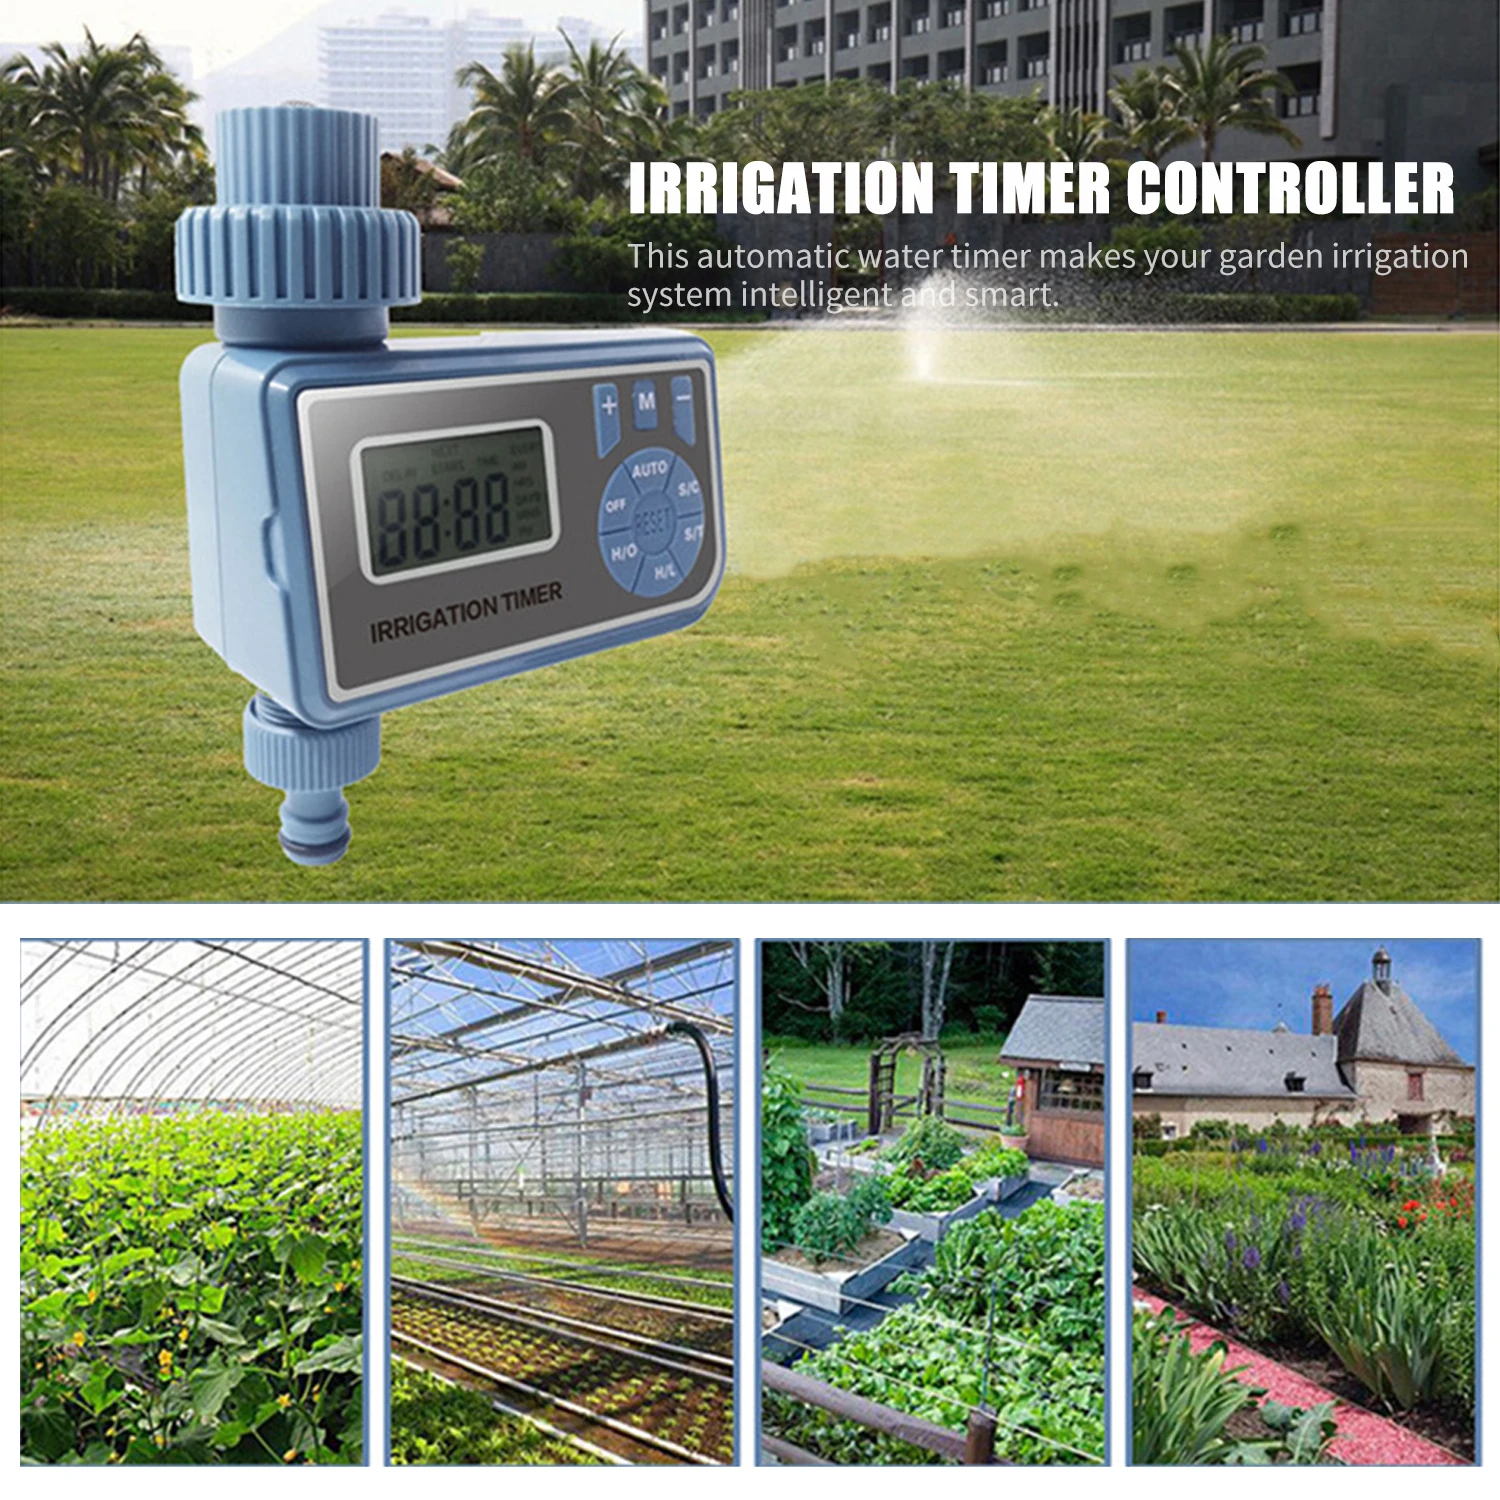 

Таймер полива садовый программируемый, электронный автоматический водонепроницаемый смеситель с ЖК-дисплеем